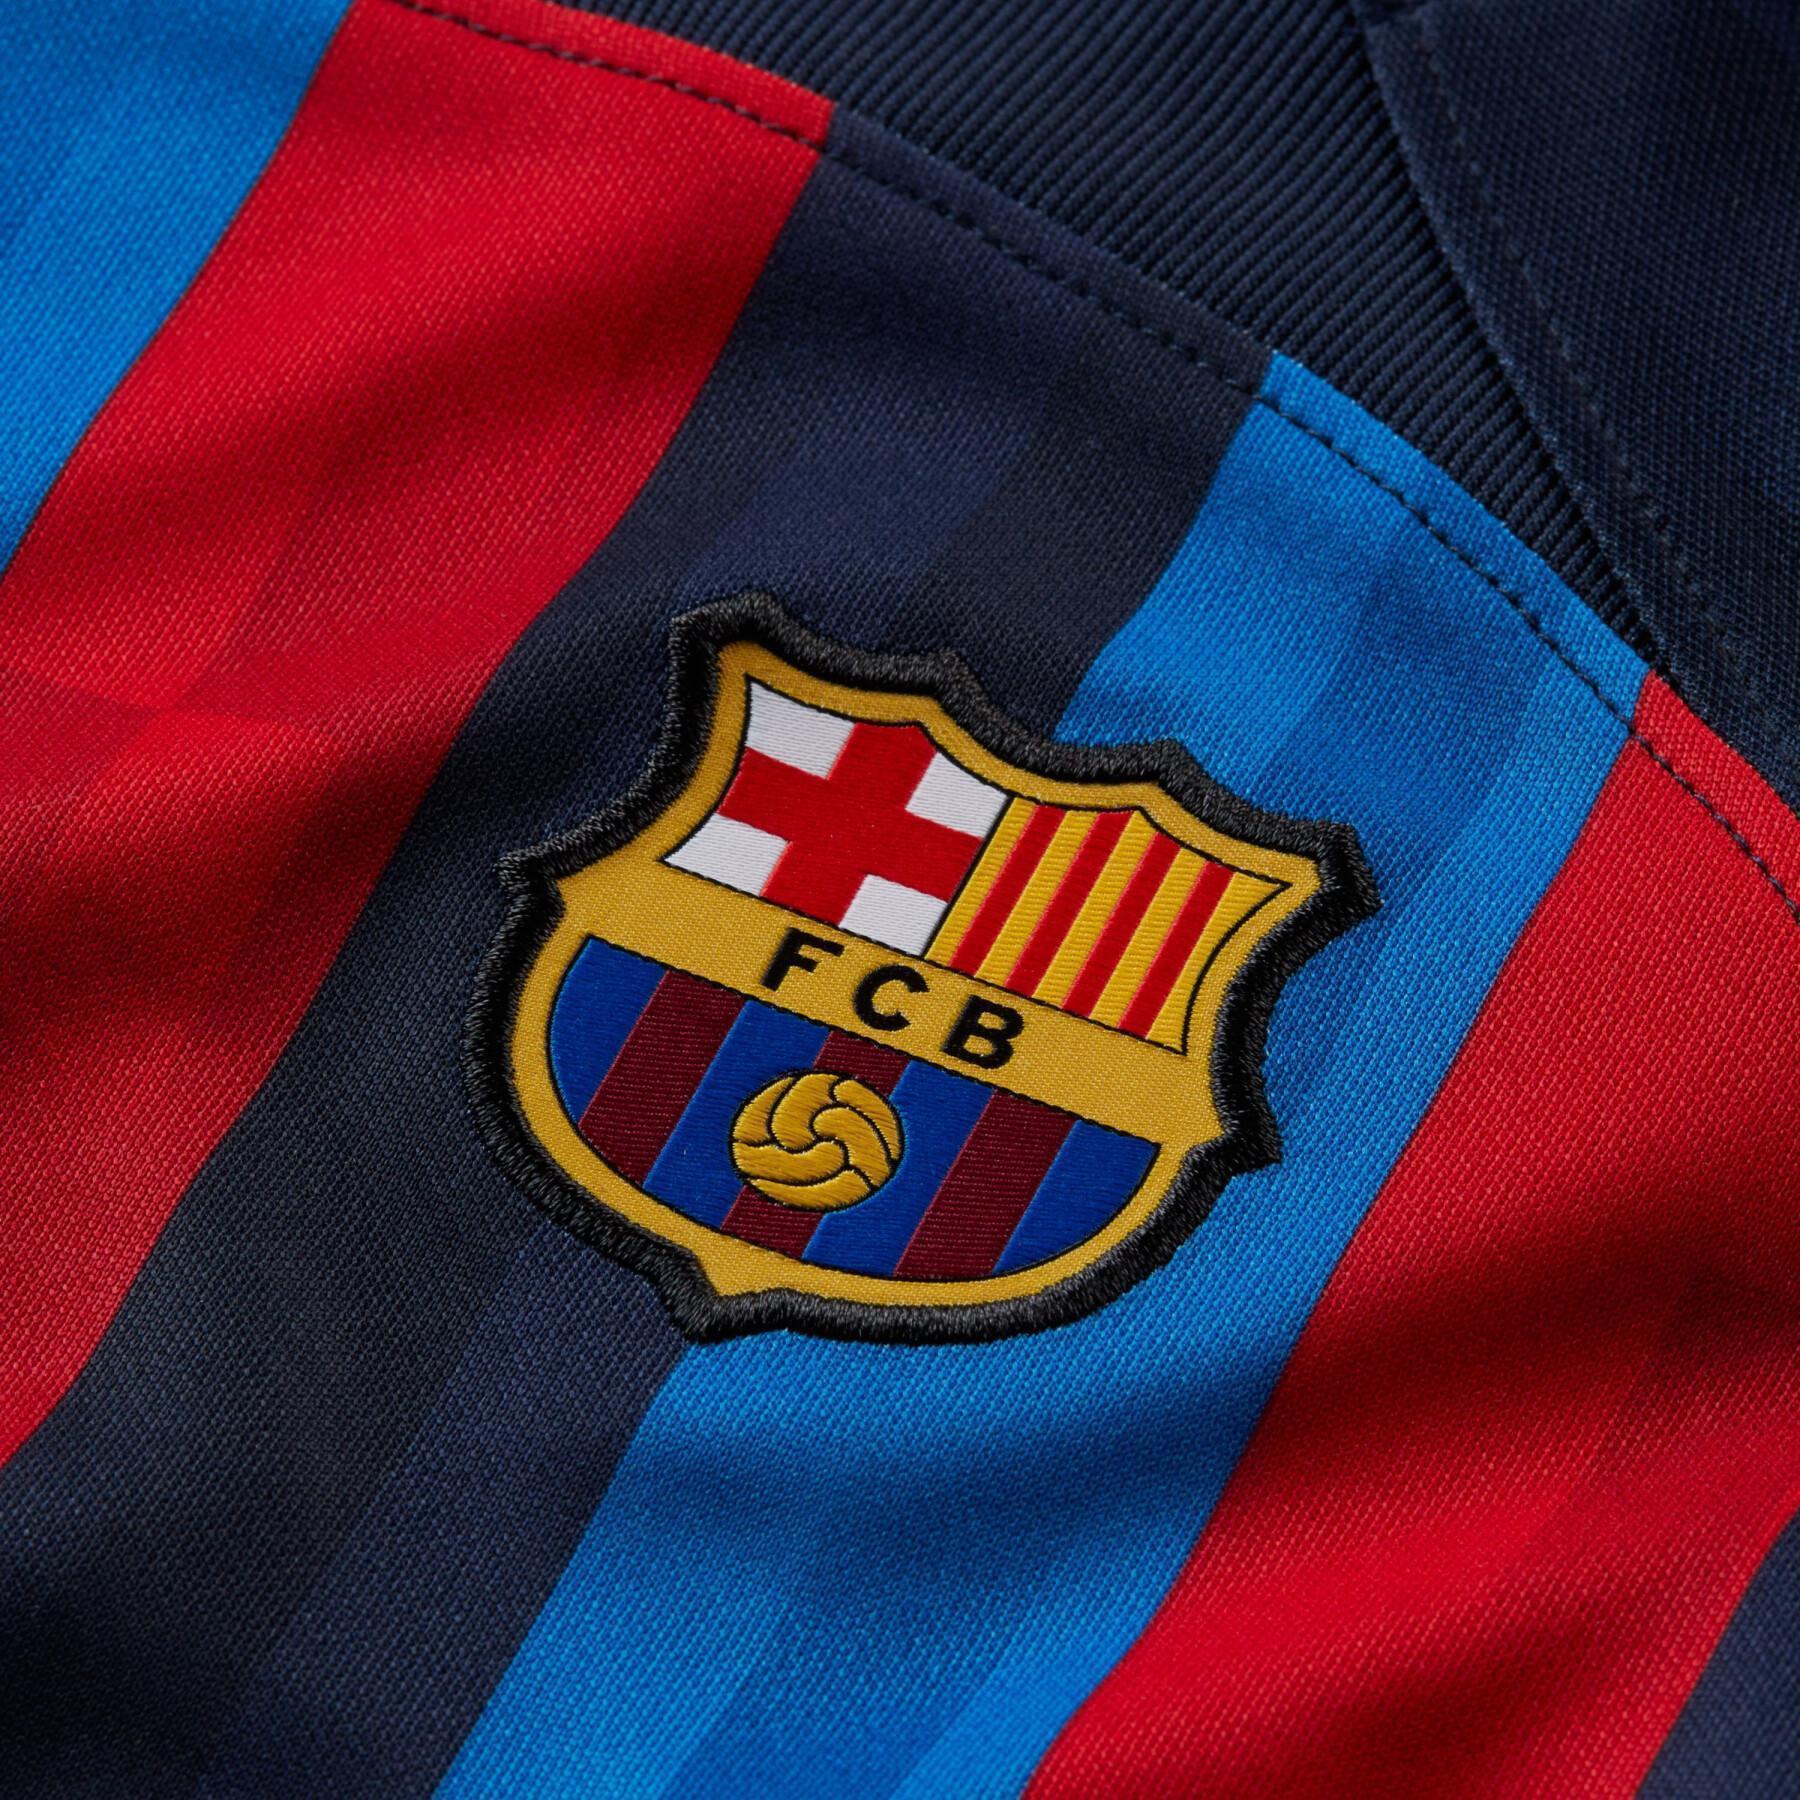 Pacote Criança em Casa FC Barcelone 2022/23